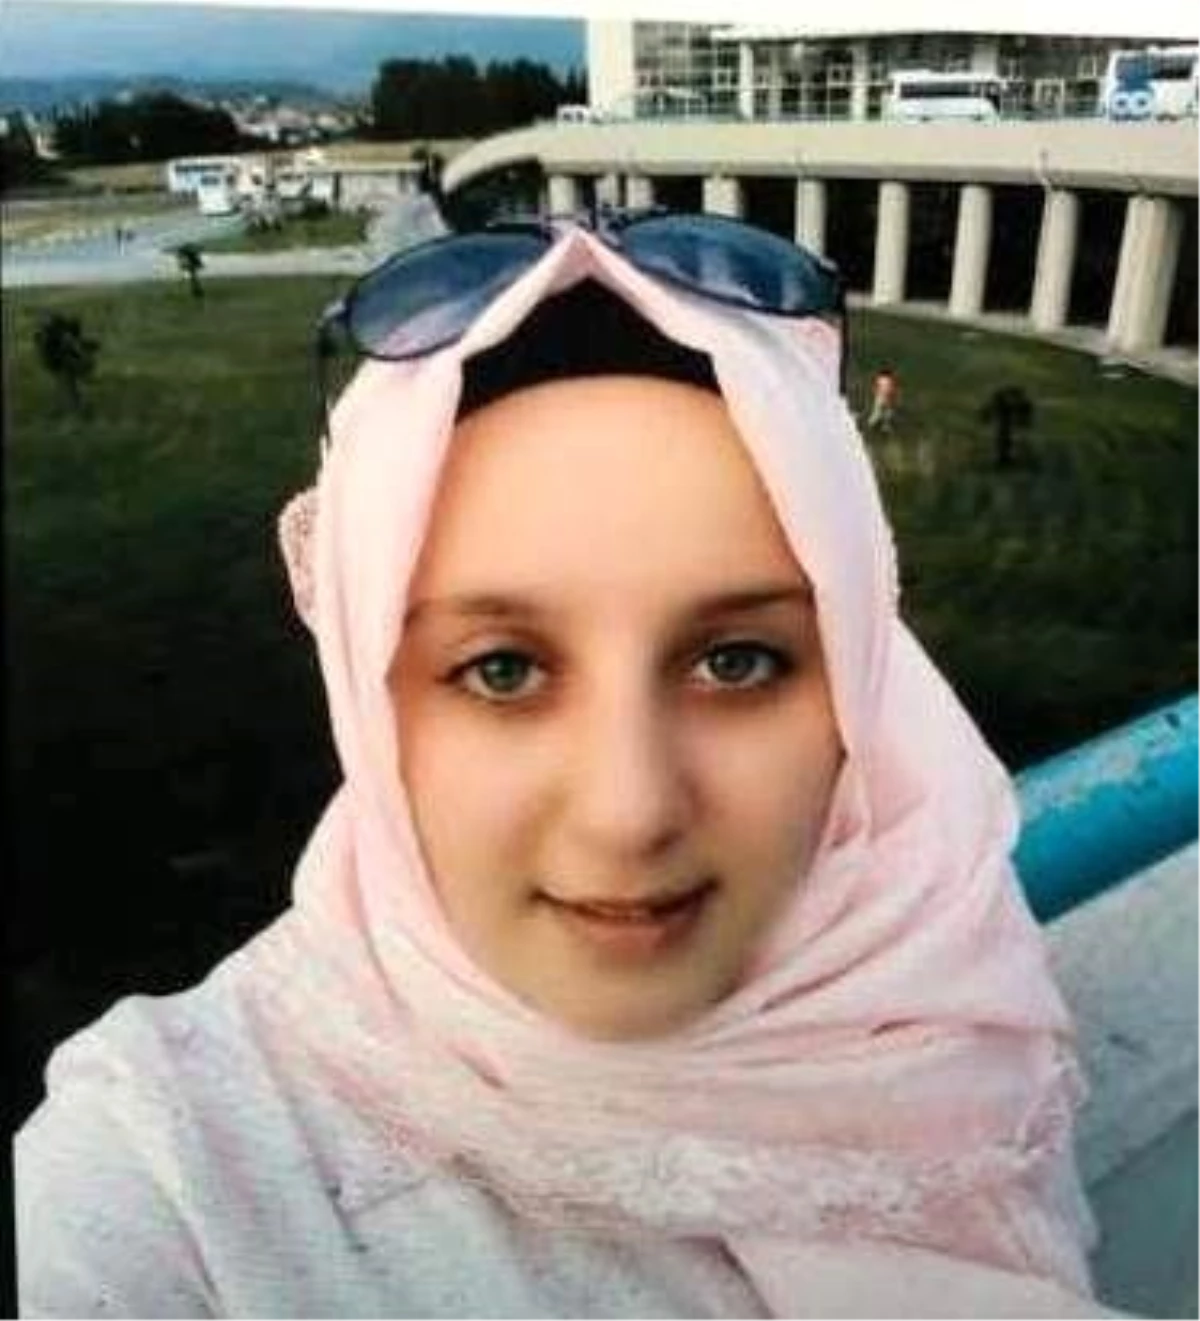 15 Yaşındaki Kız, Selfie Çekmek İsterken Başından Vuruldu